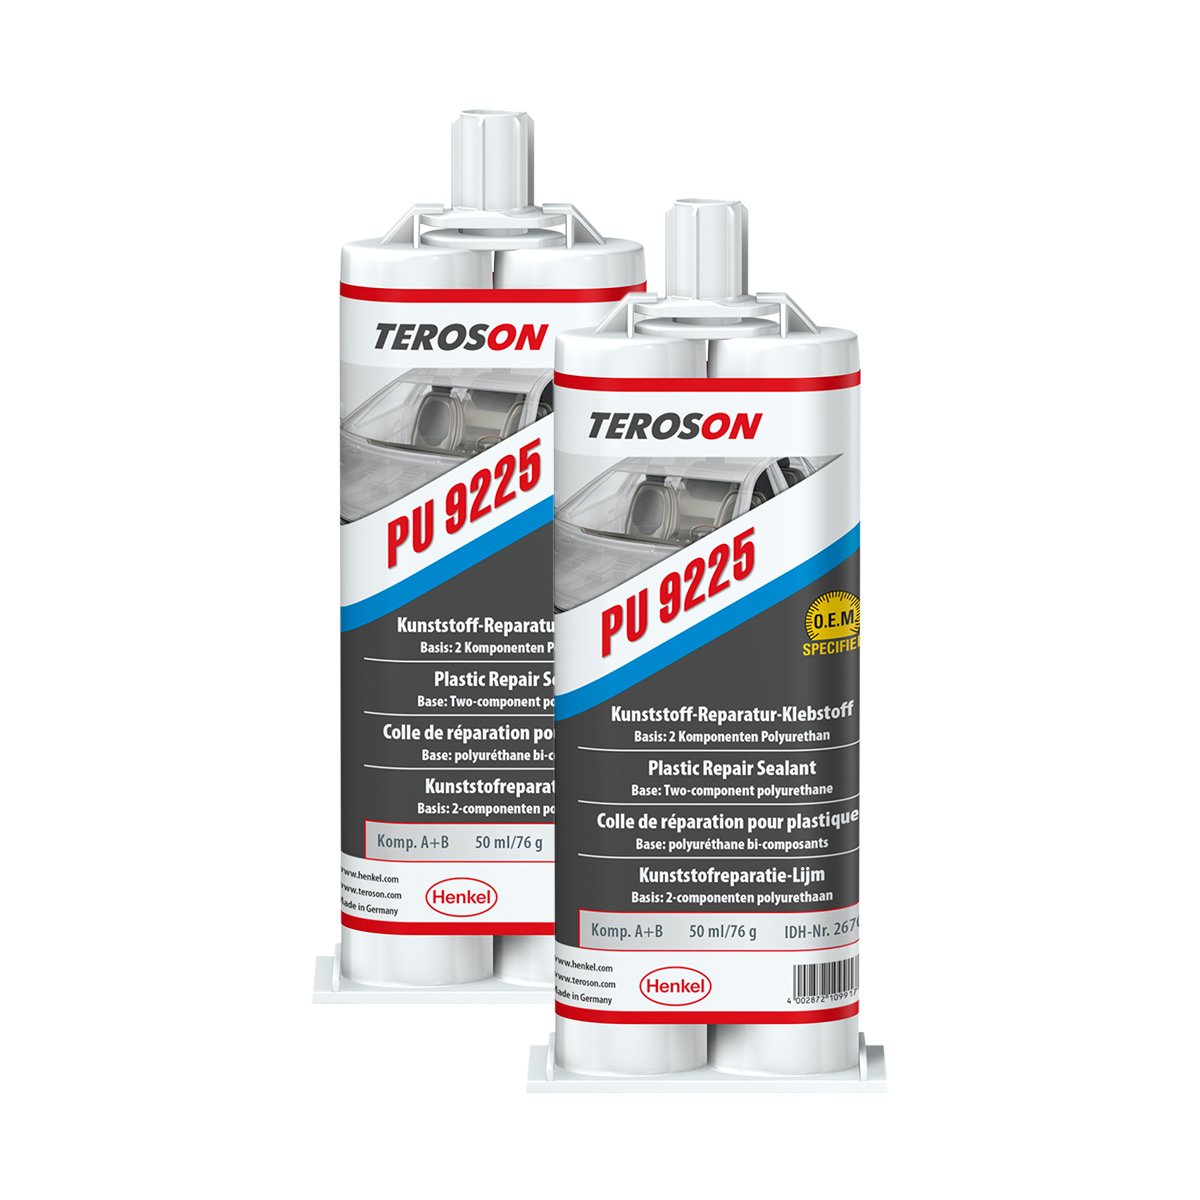 2X TEROSON PU 9225 - Kunststoffreparatur-Klebstoff 267081 2 x 25 ml von TEROSON-SET